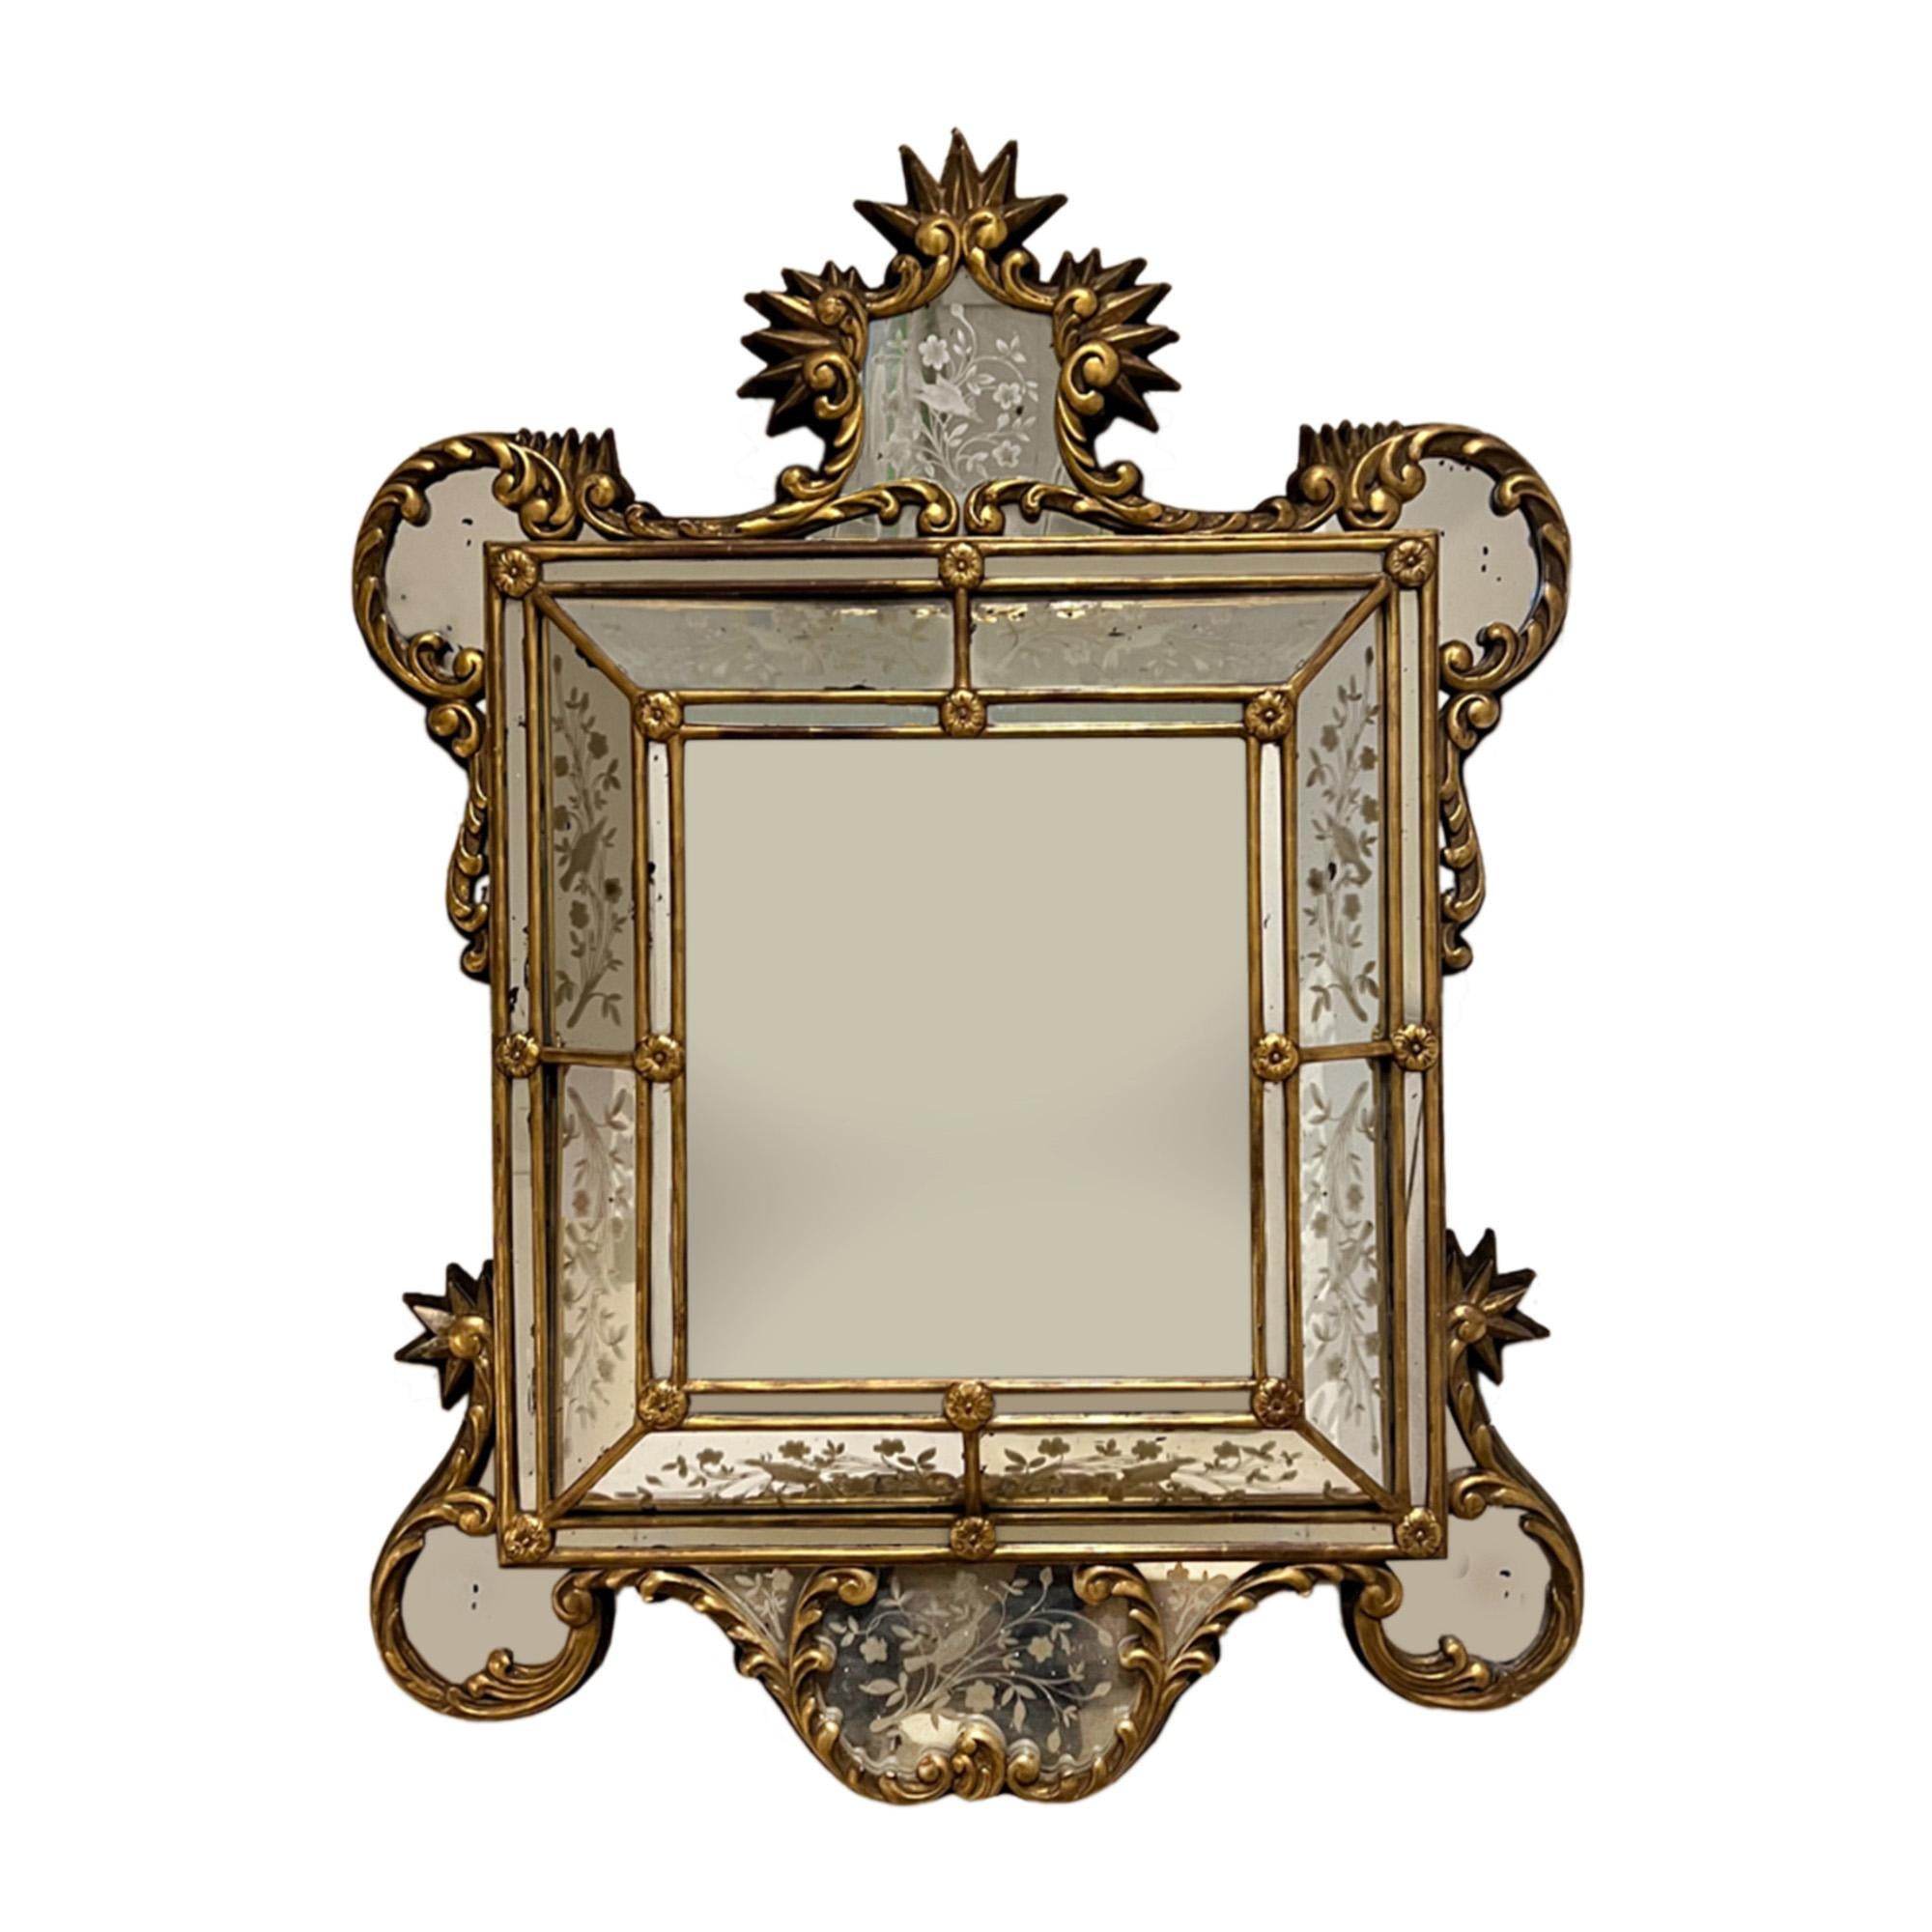 Un miroir à coussin vraiment inhabituel, fabriqué en Italie dans le deuxième quart du 20e siècle. 

Fabriqué en bois doré, il présente le verre gravé d'origine, avec des détails floraux et aviaires. Jetez un coup d'œil à toutes nos photos.